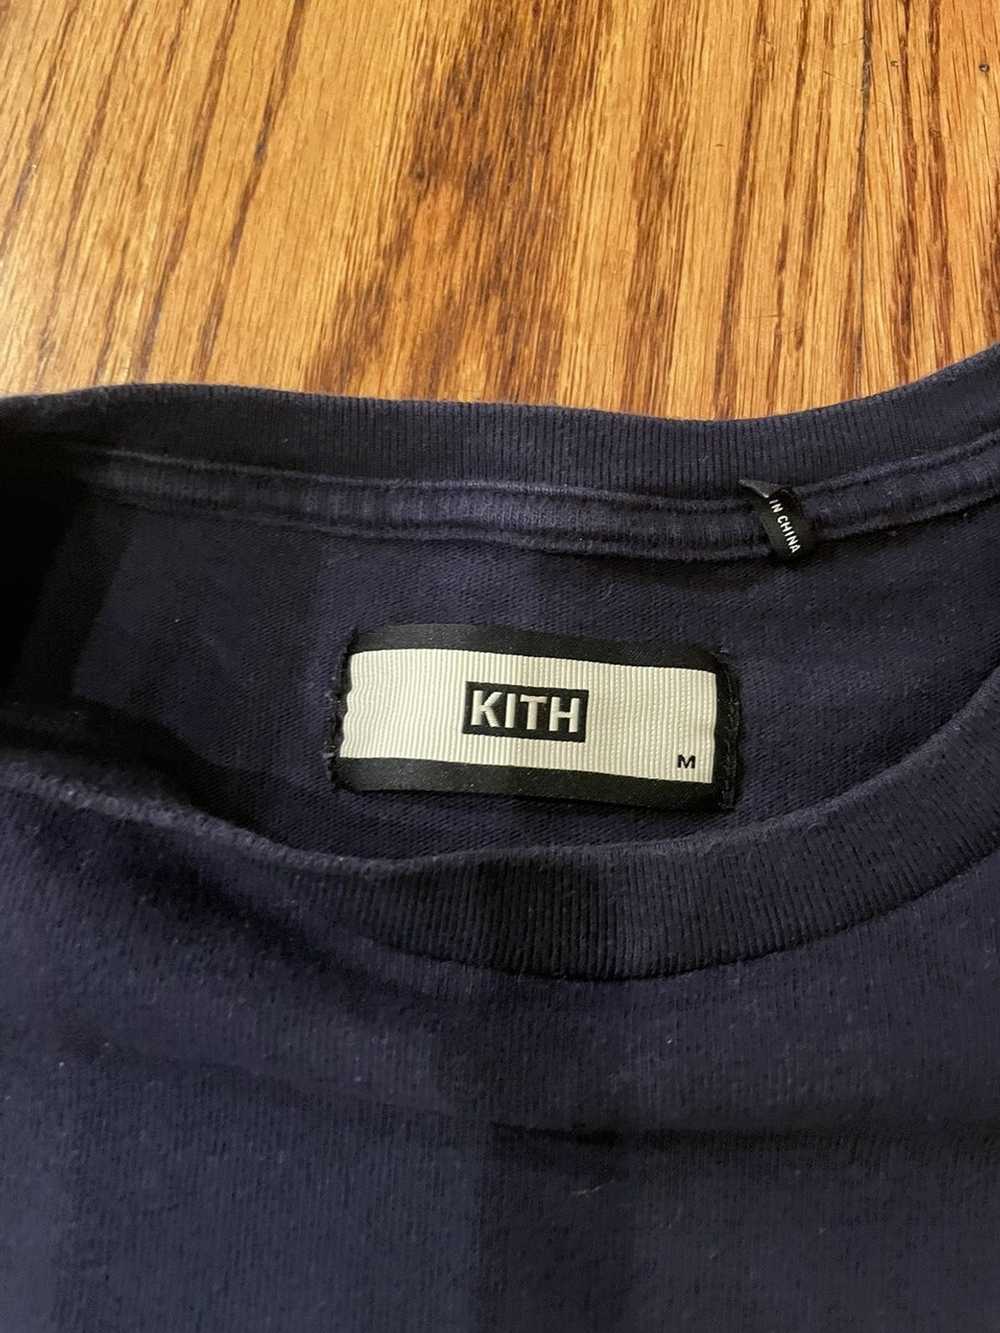 Kith Kith Box Logo Navy - image 2